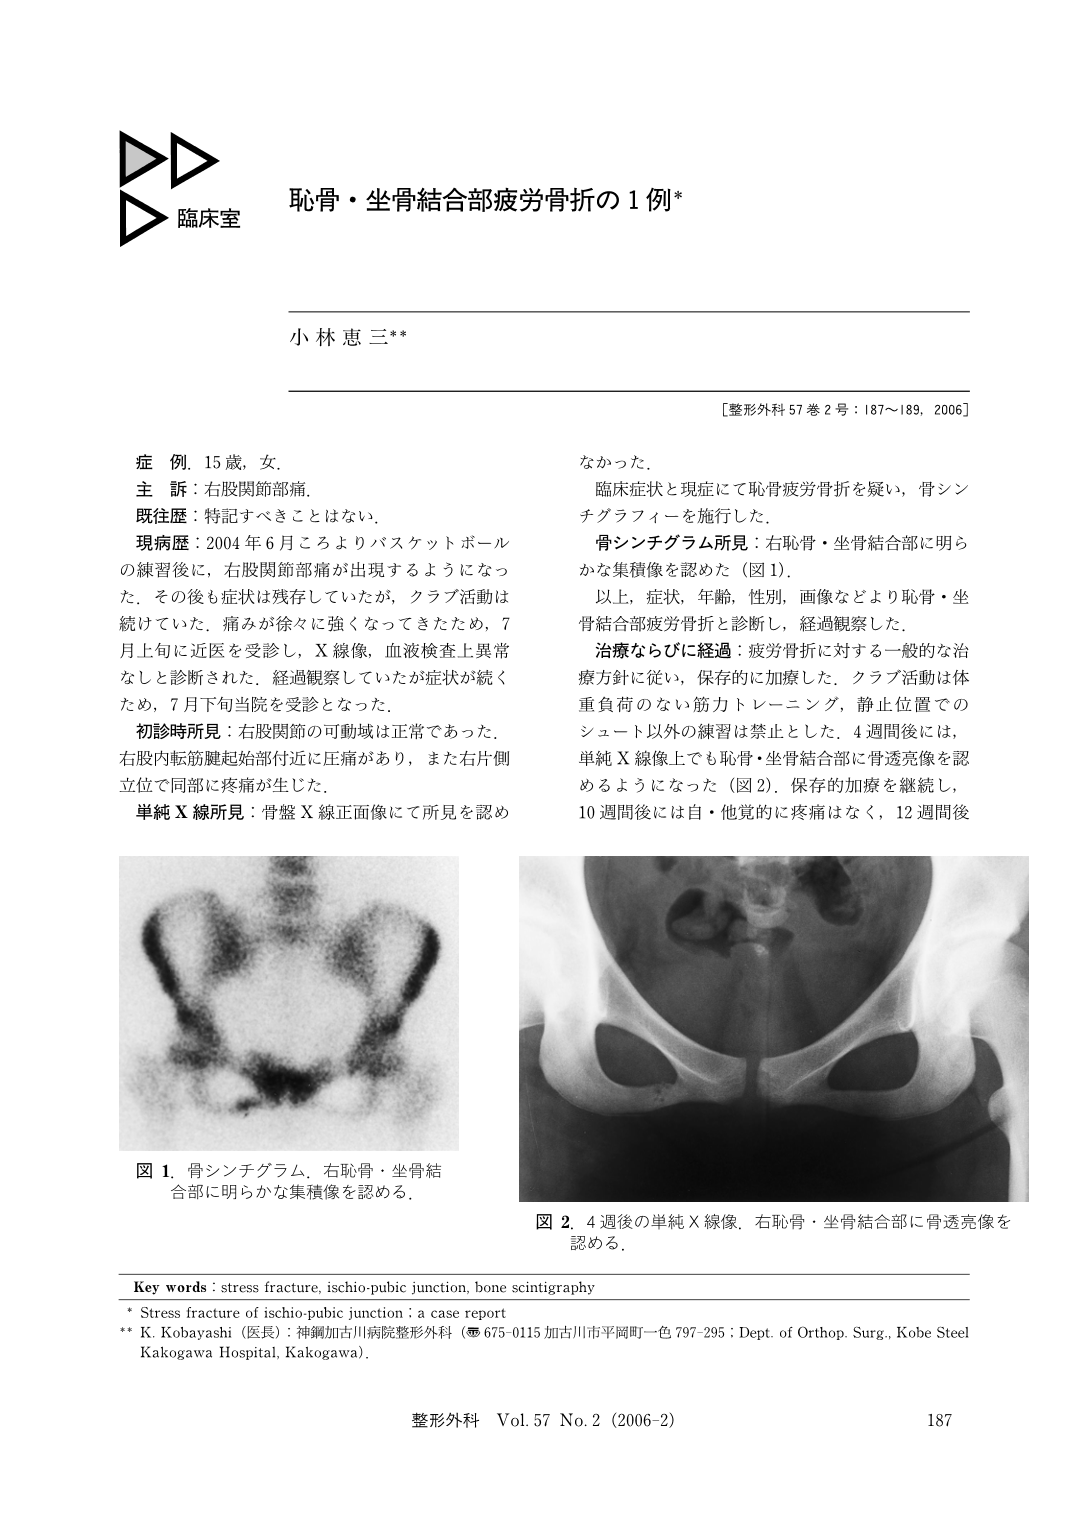 恥骨 坐骨結合部疲労骨折の1例 臨床雑誌整形外科 57巻2号 医書 Jp